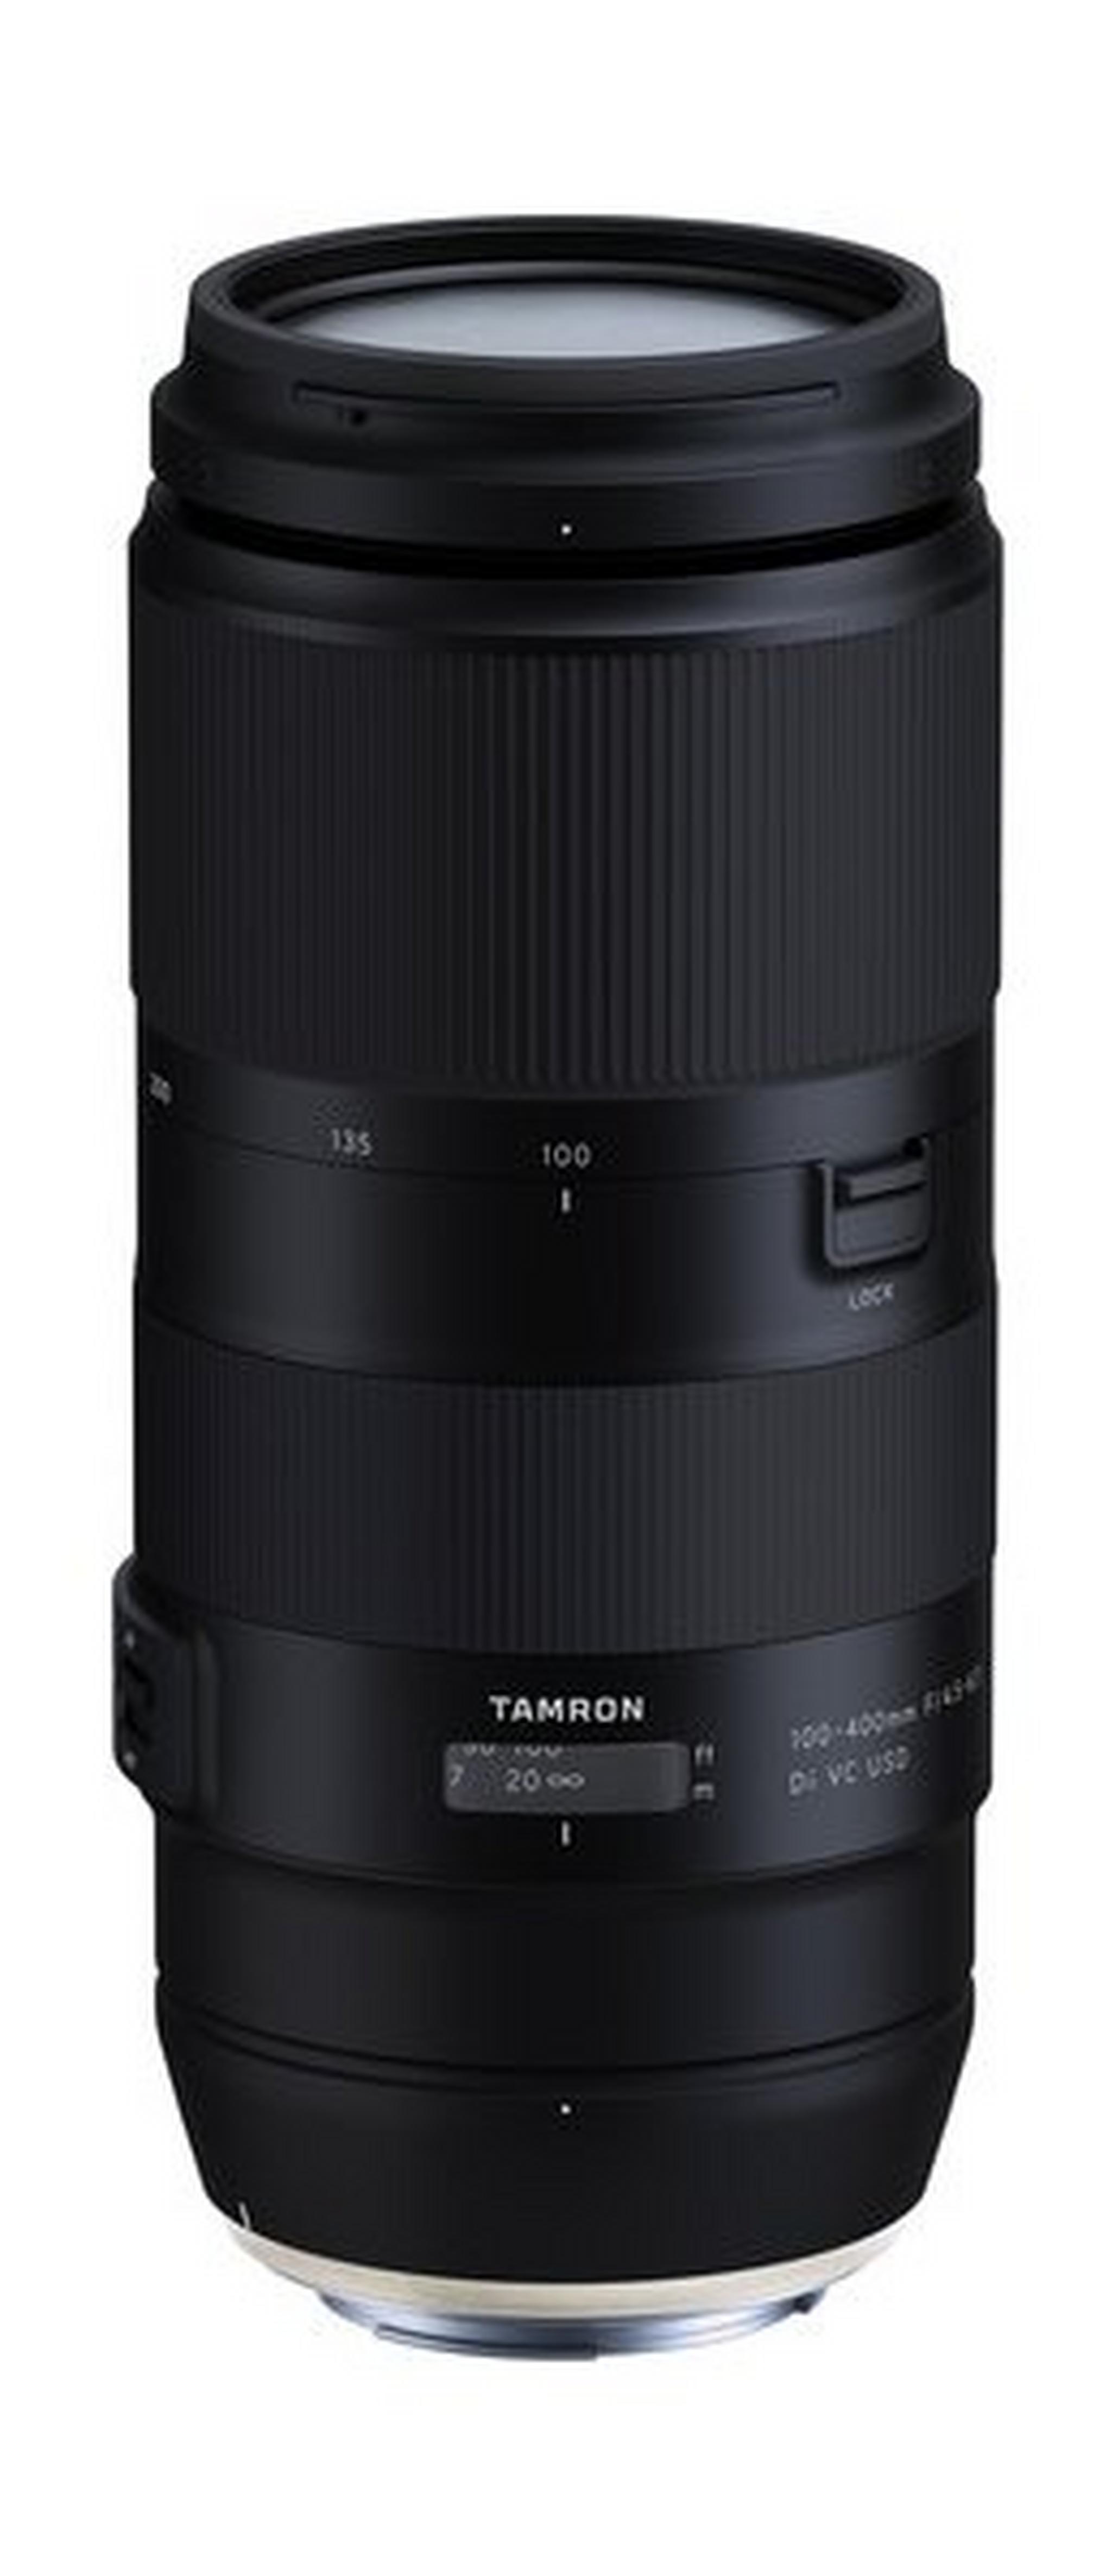 Tamron A035E 100-400mm F/4.5-6.3 Di VC USD Lens for Canon - Black